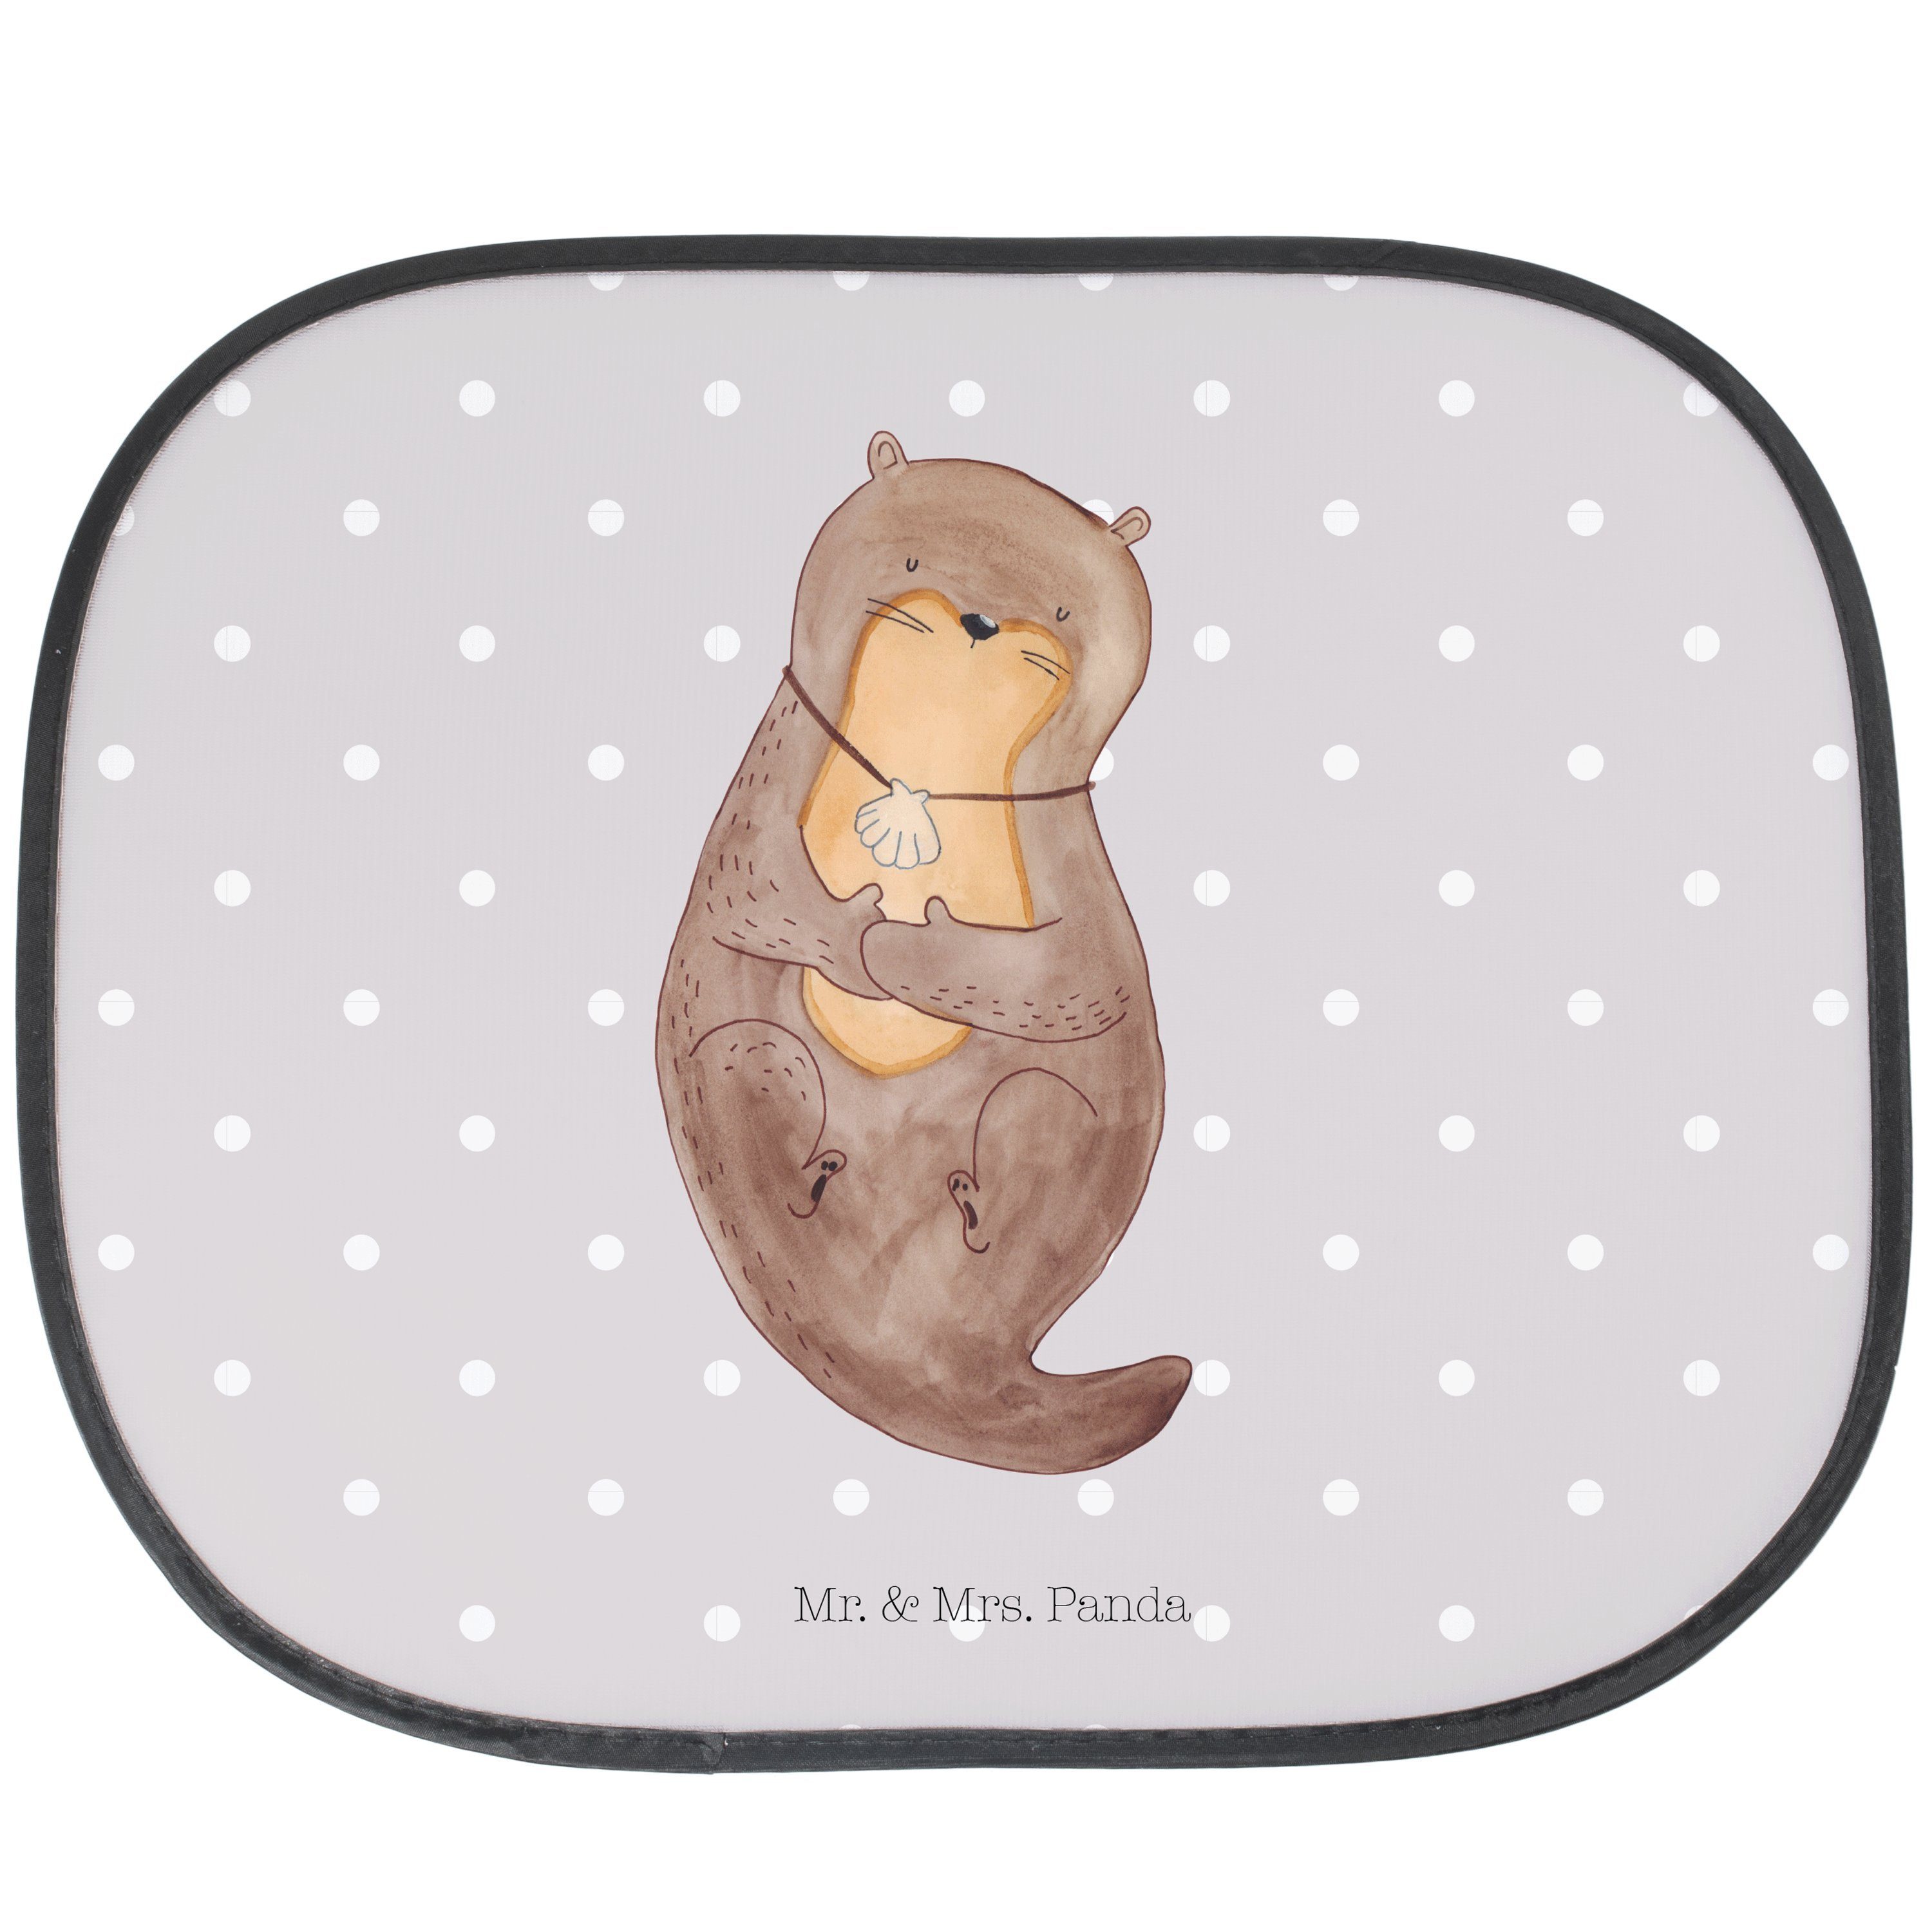 Sonnenschutz Otter mit Muschelmedaillon - Grau Pastell - Geschenk, Motivation, süß, Mr. & Mrs. Panda, Seidenmatt